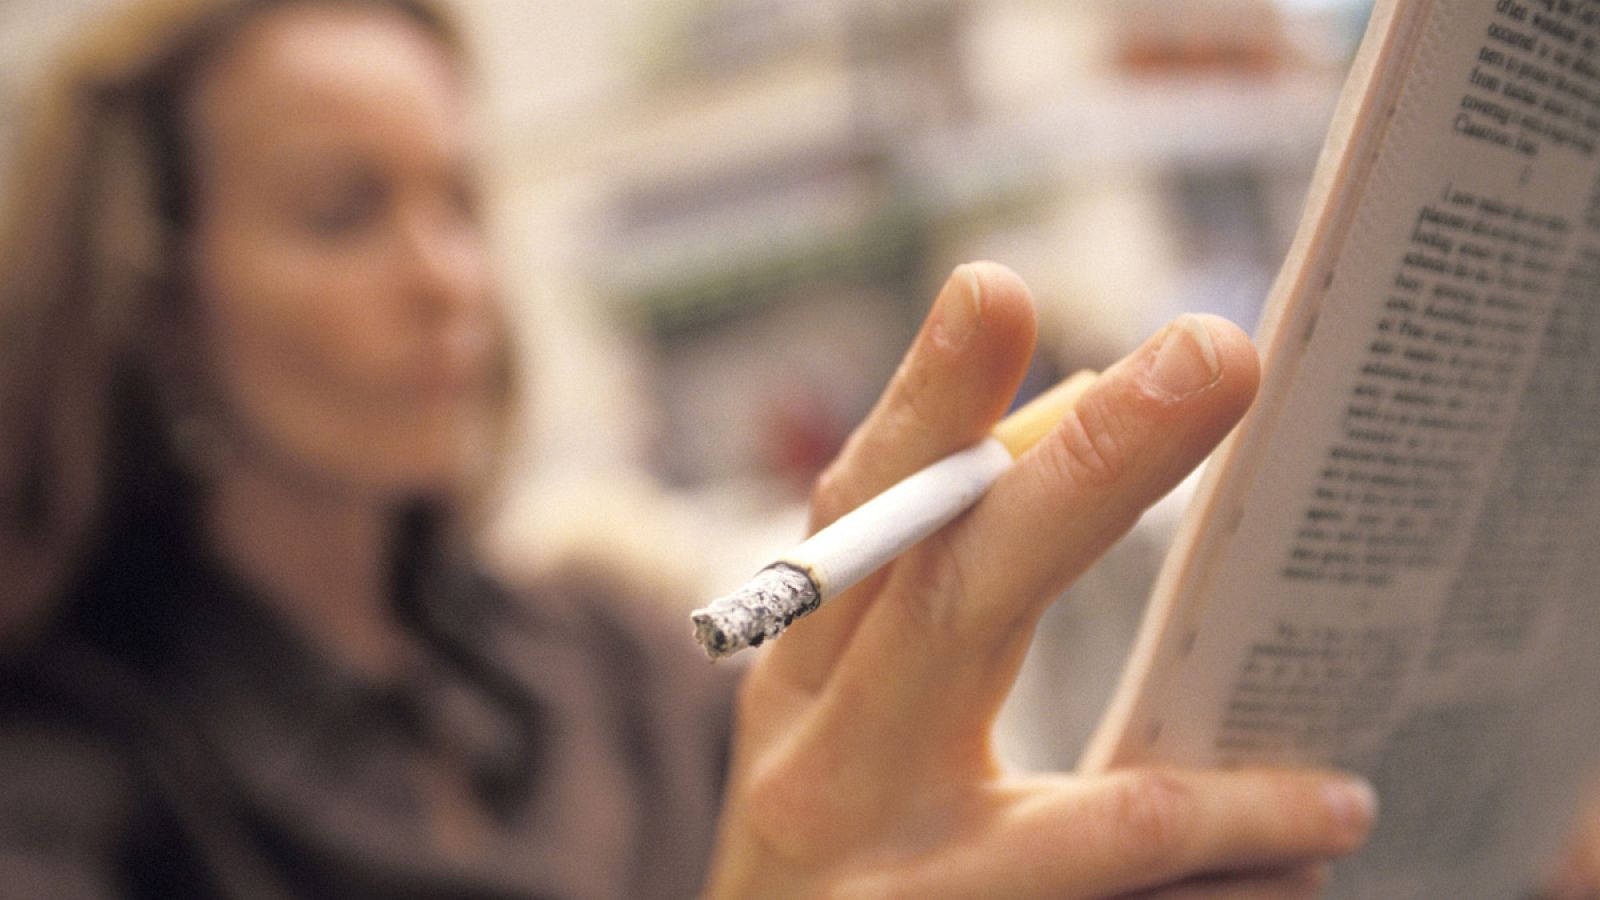 Aquellos que han fumado entre uno y diez cigarrillos diarios tienen un riesgo de muerte temprana un 87% más alto que el de los no fumadores.